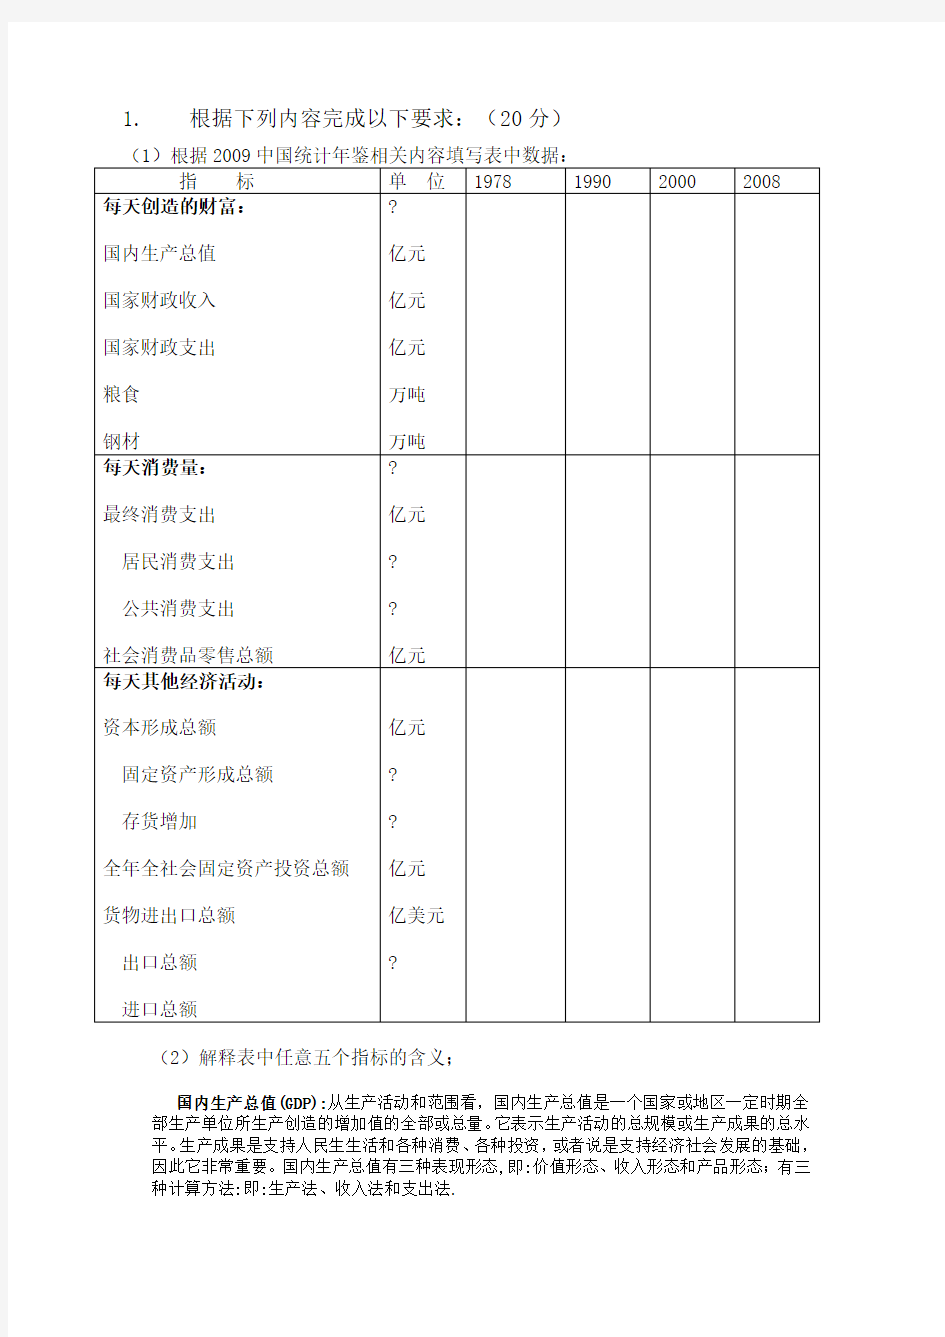 根据2009中国统计年鉴相关内容填写表中数据